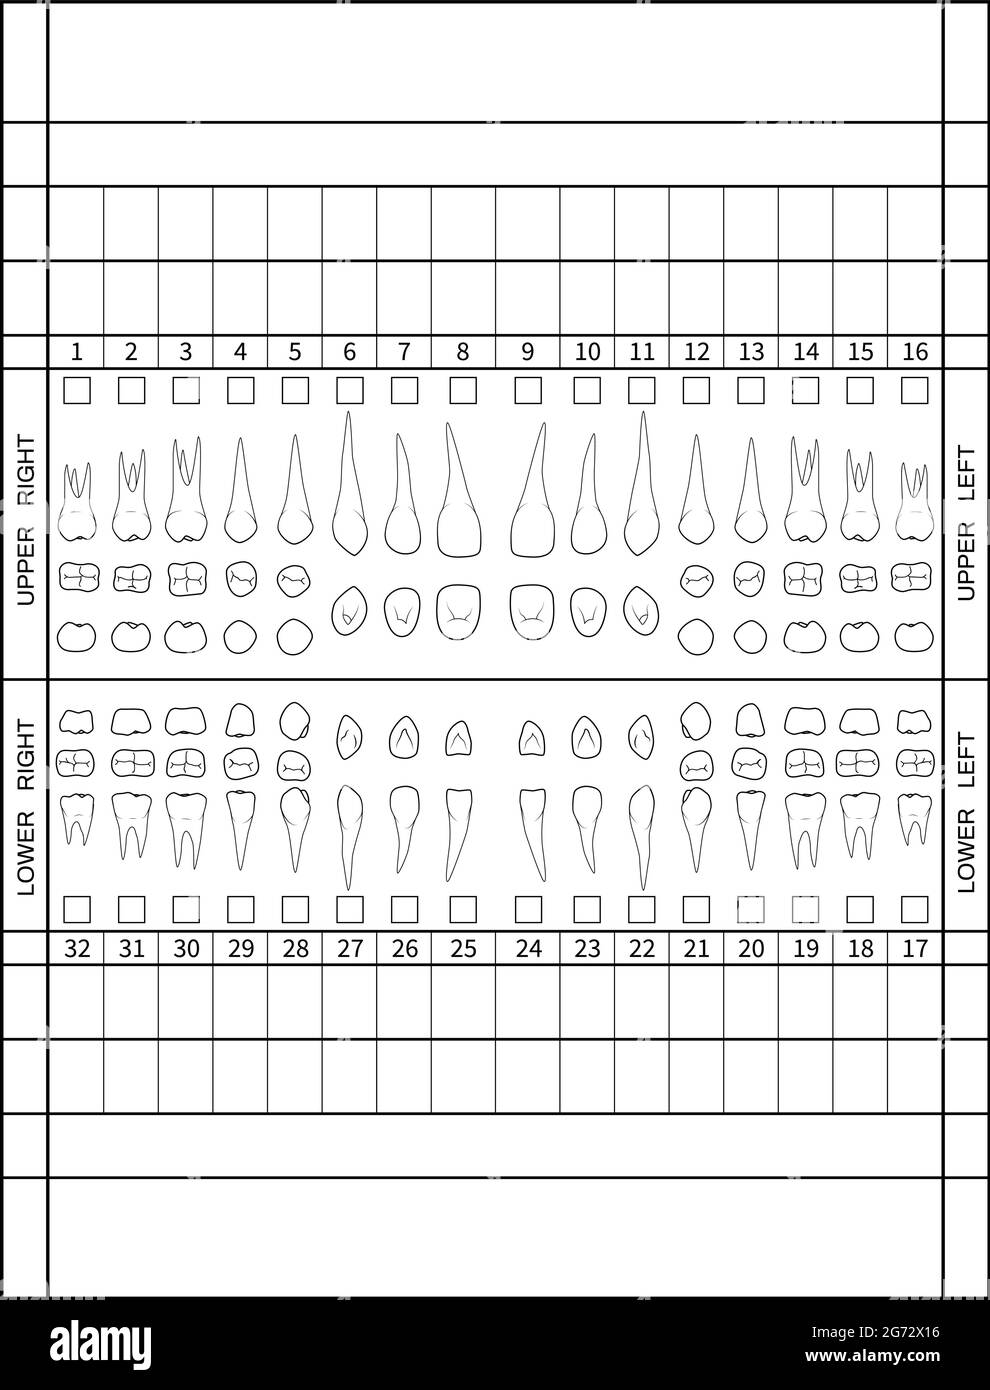 Tableau dentaire. Dents humaines avec tableau de numérotation des racines pour les dents adultes. Système de numérotation des dentistes. Vecteur. Illustration. Illustration de Vecteur